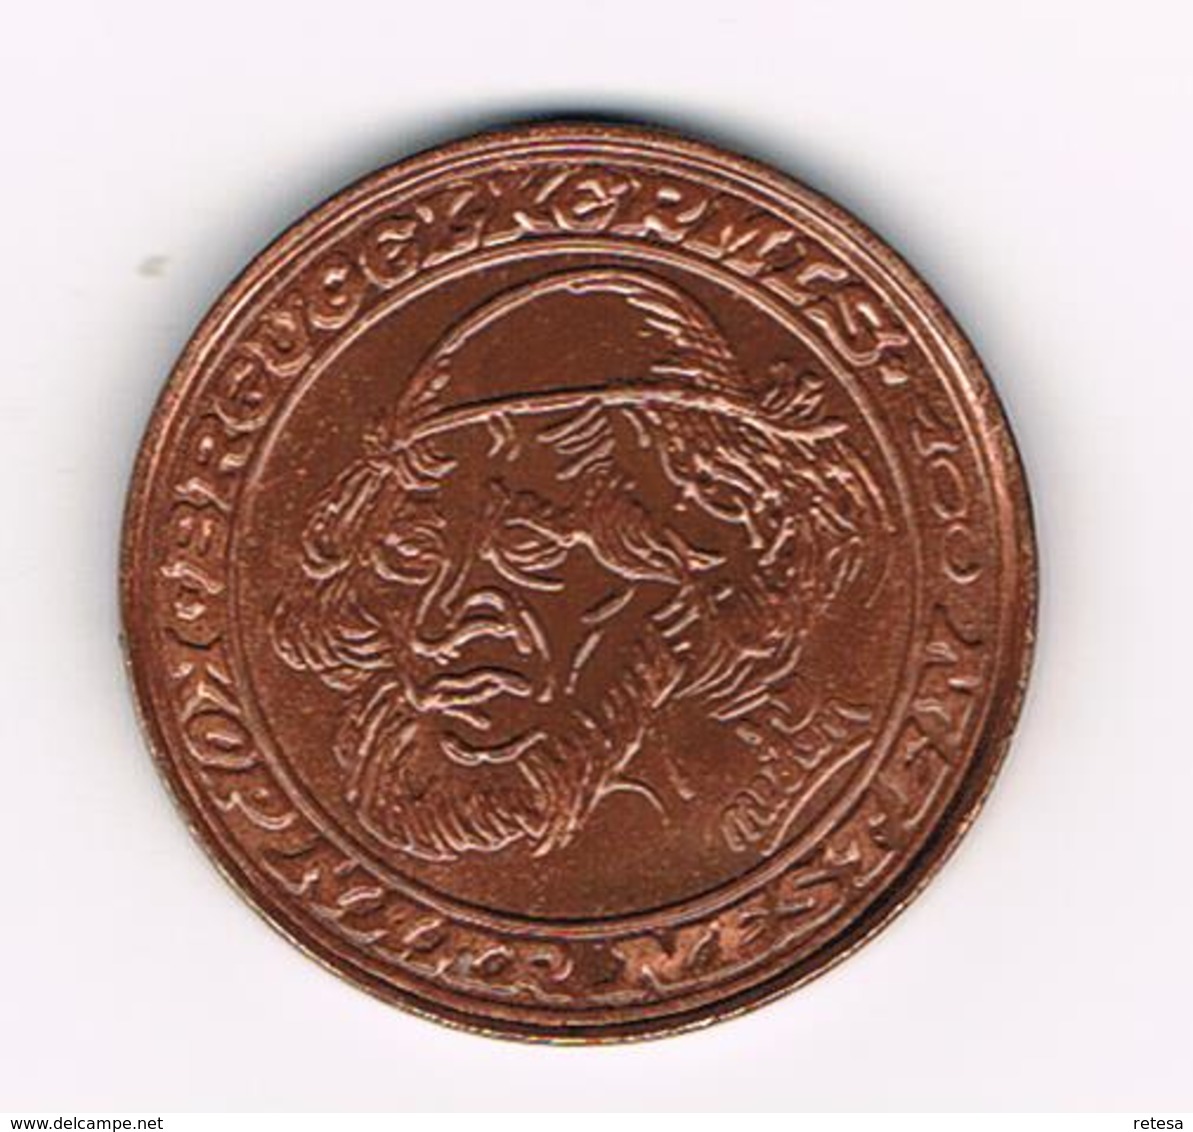 & BREUGELPENNING ONTWORPEN Door NESTEN 1982 - Souvenir-Medaille (elongated Coins)